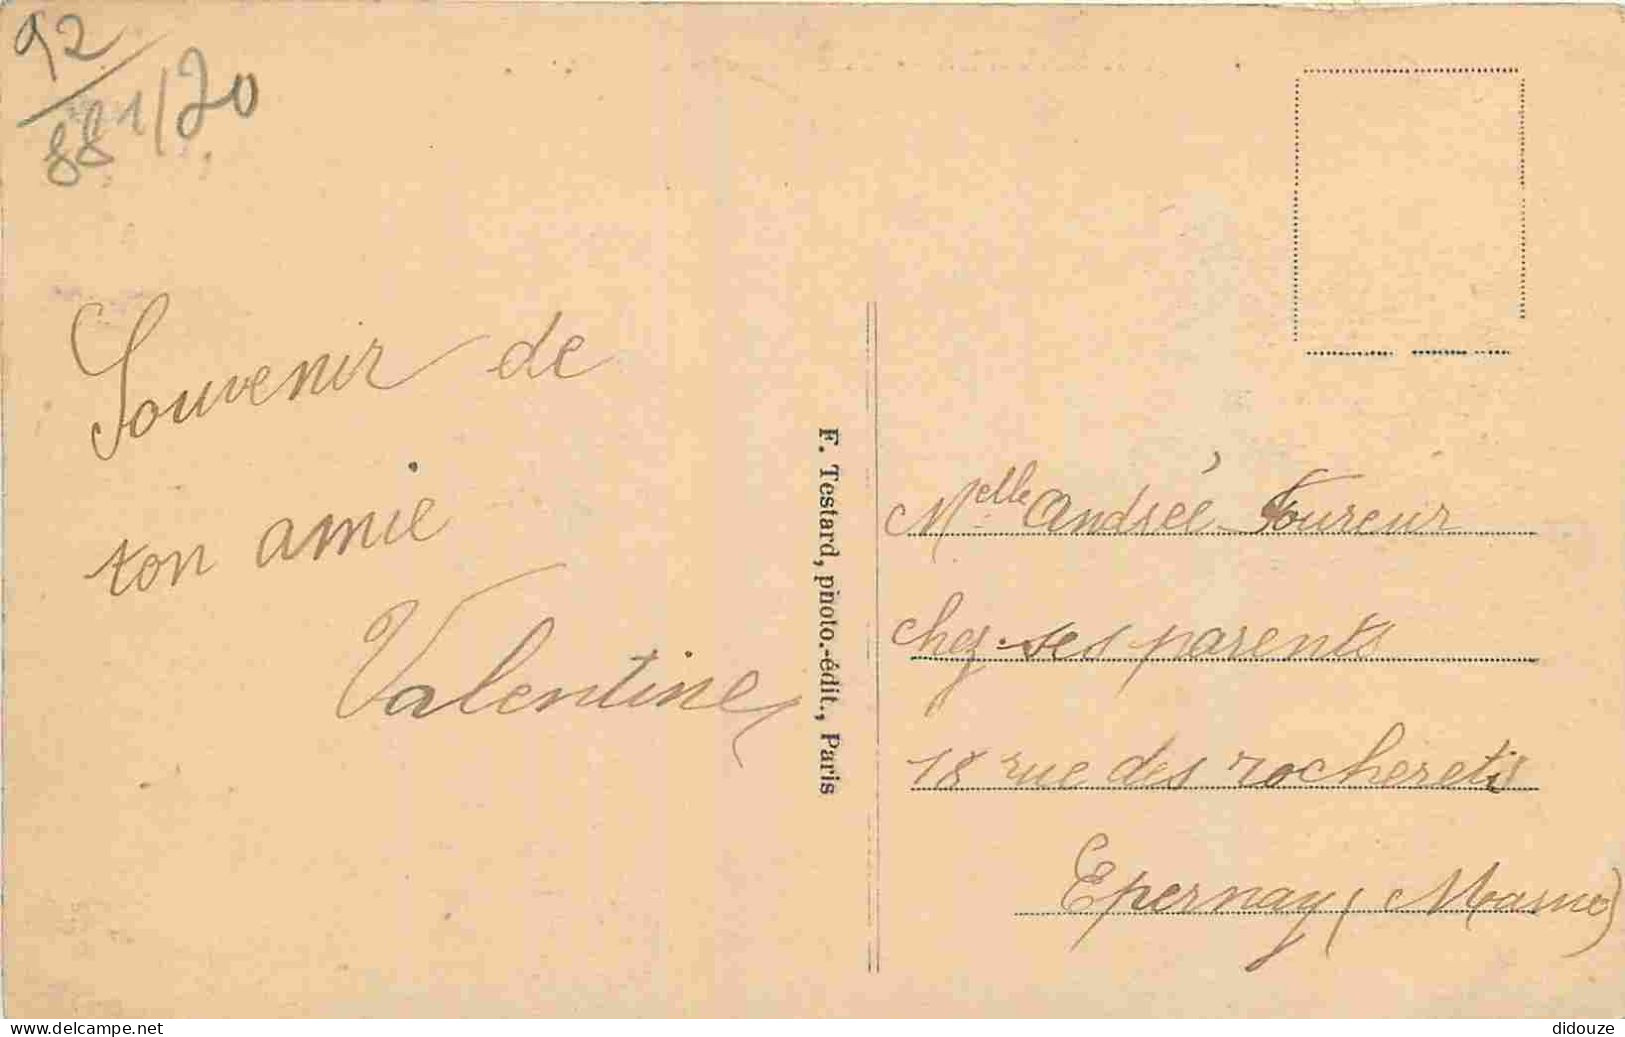 92 - Sèvres - Vue Générale - CPA - Oblitération Ronde De 1924 - Voir Scans Recto-Verso - Sevres